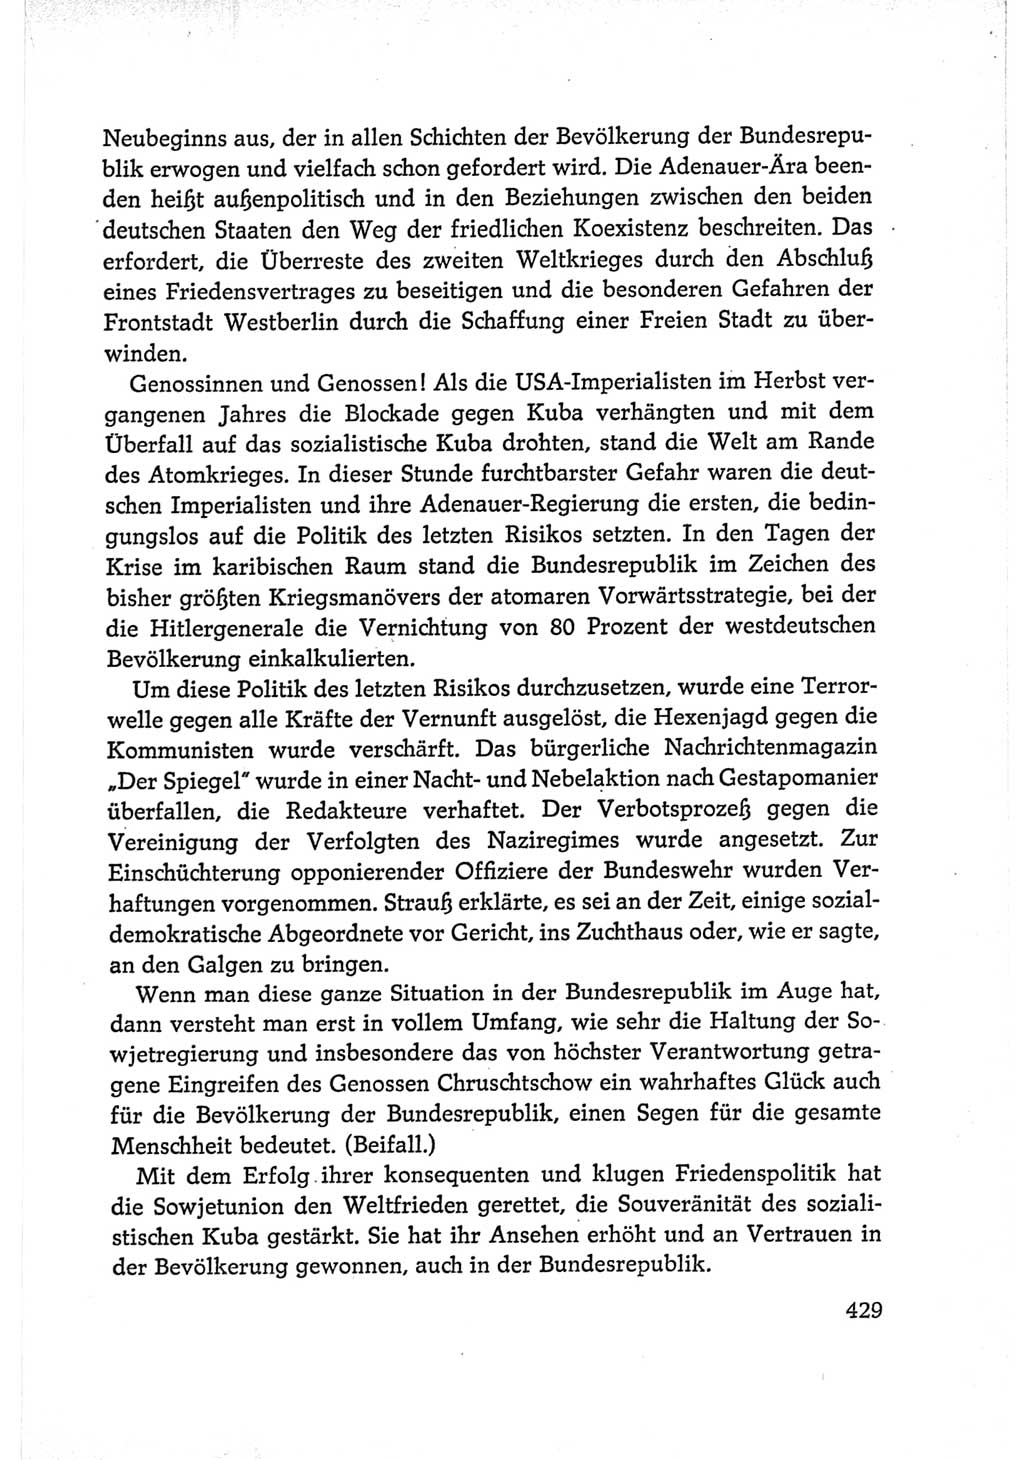 Protokoll der Verhandlungen des Ⅵ. Parteitages der Sozialistischen Einheitspartei Deutschlands (SED) [Deutsche Demokratische Republik (DDR)] 1963, Band Ⅰ, Seite 429 (Prot. Verh. Ⅵ. PT SED DDR 1963, Bd. Ⅰ, S. 429)